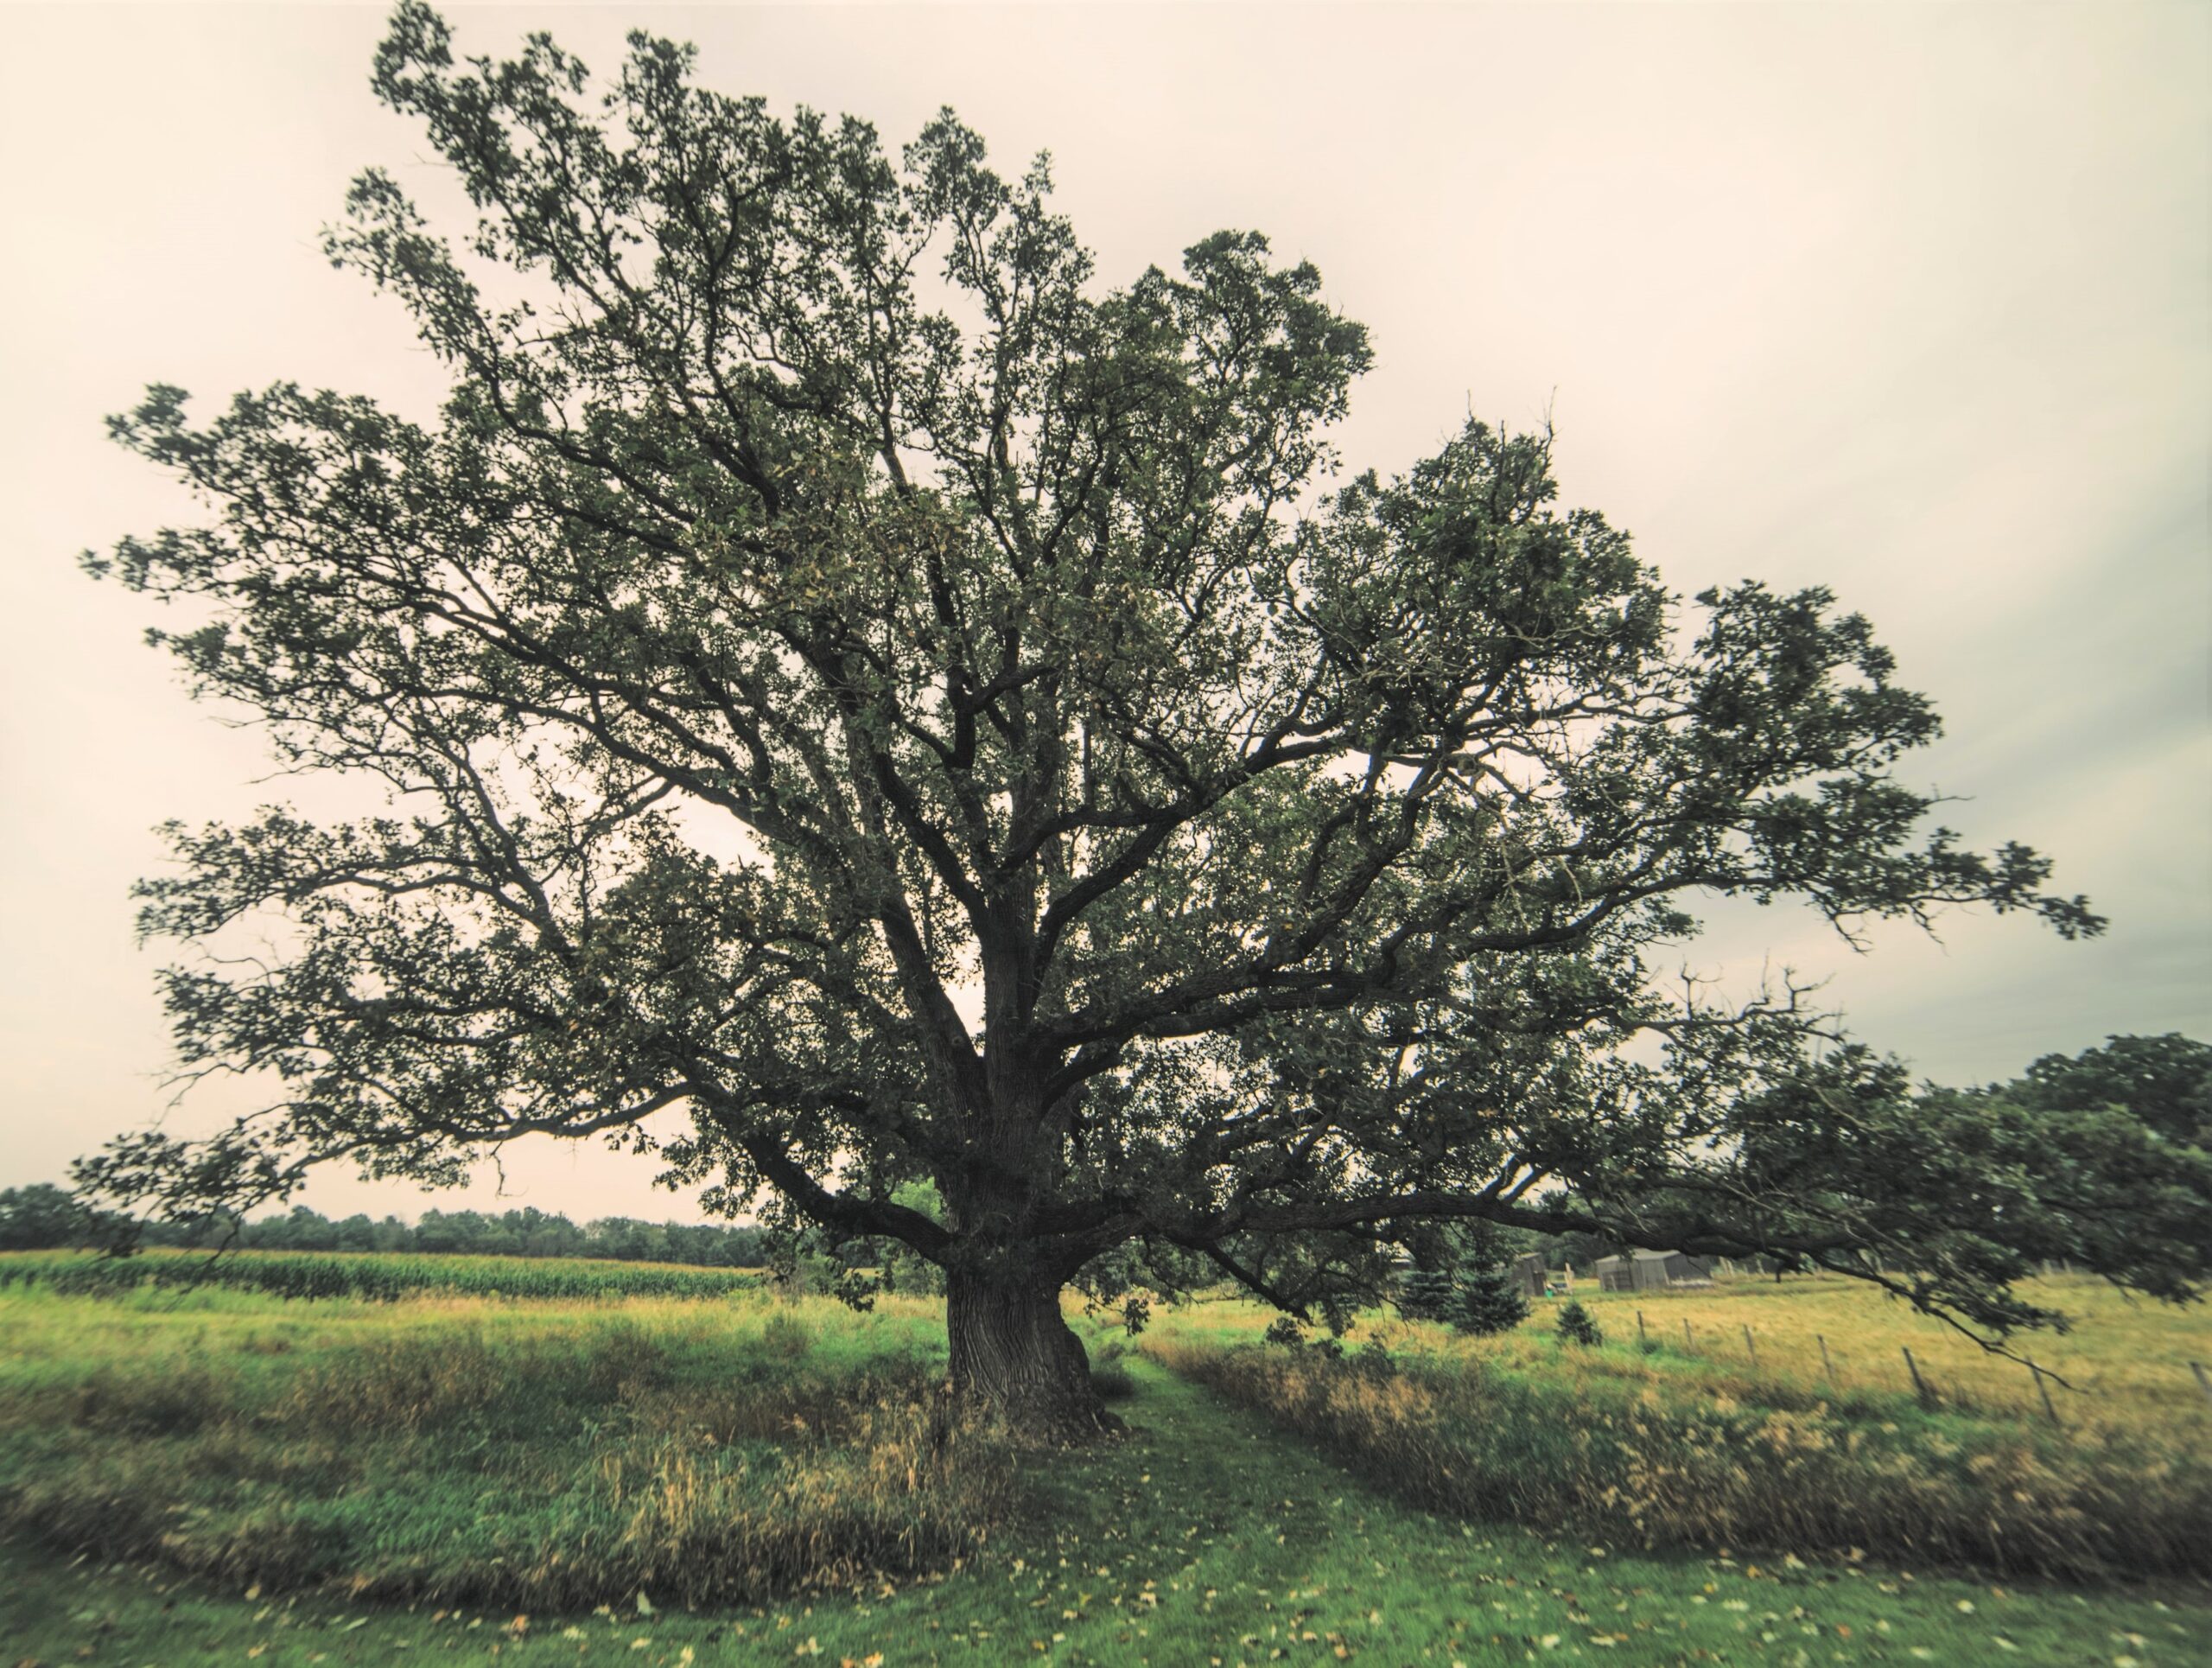 bur oak in Waukesha county